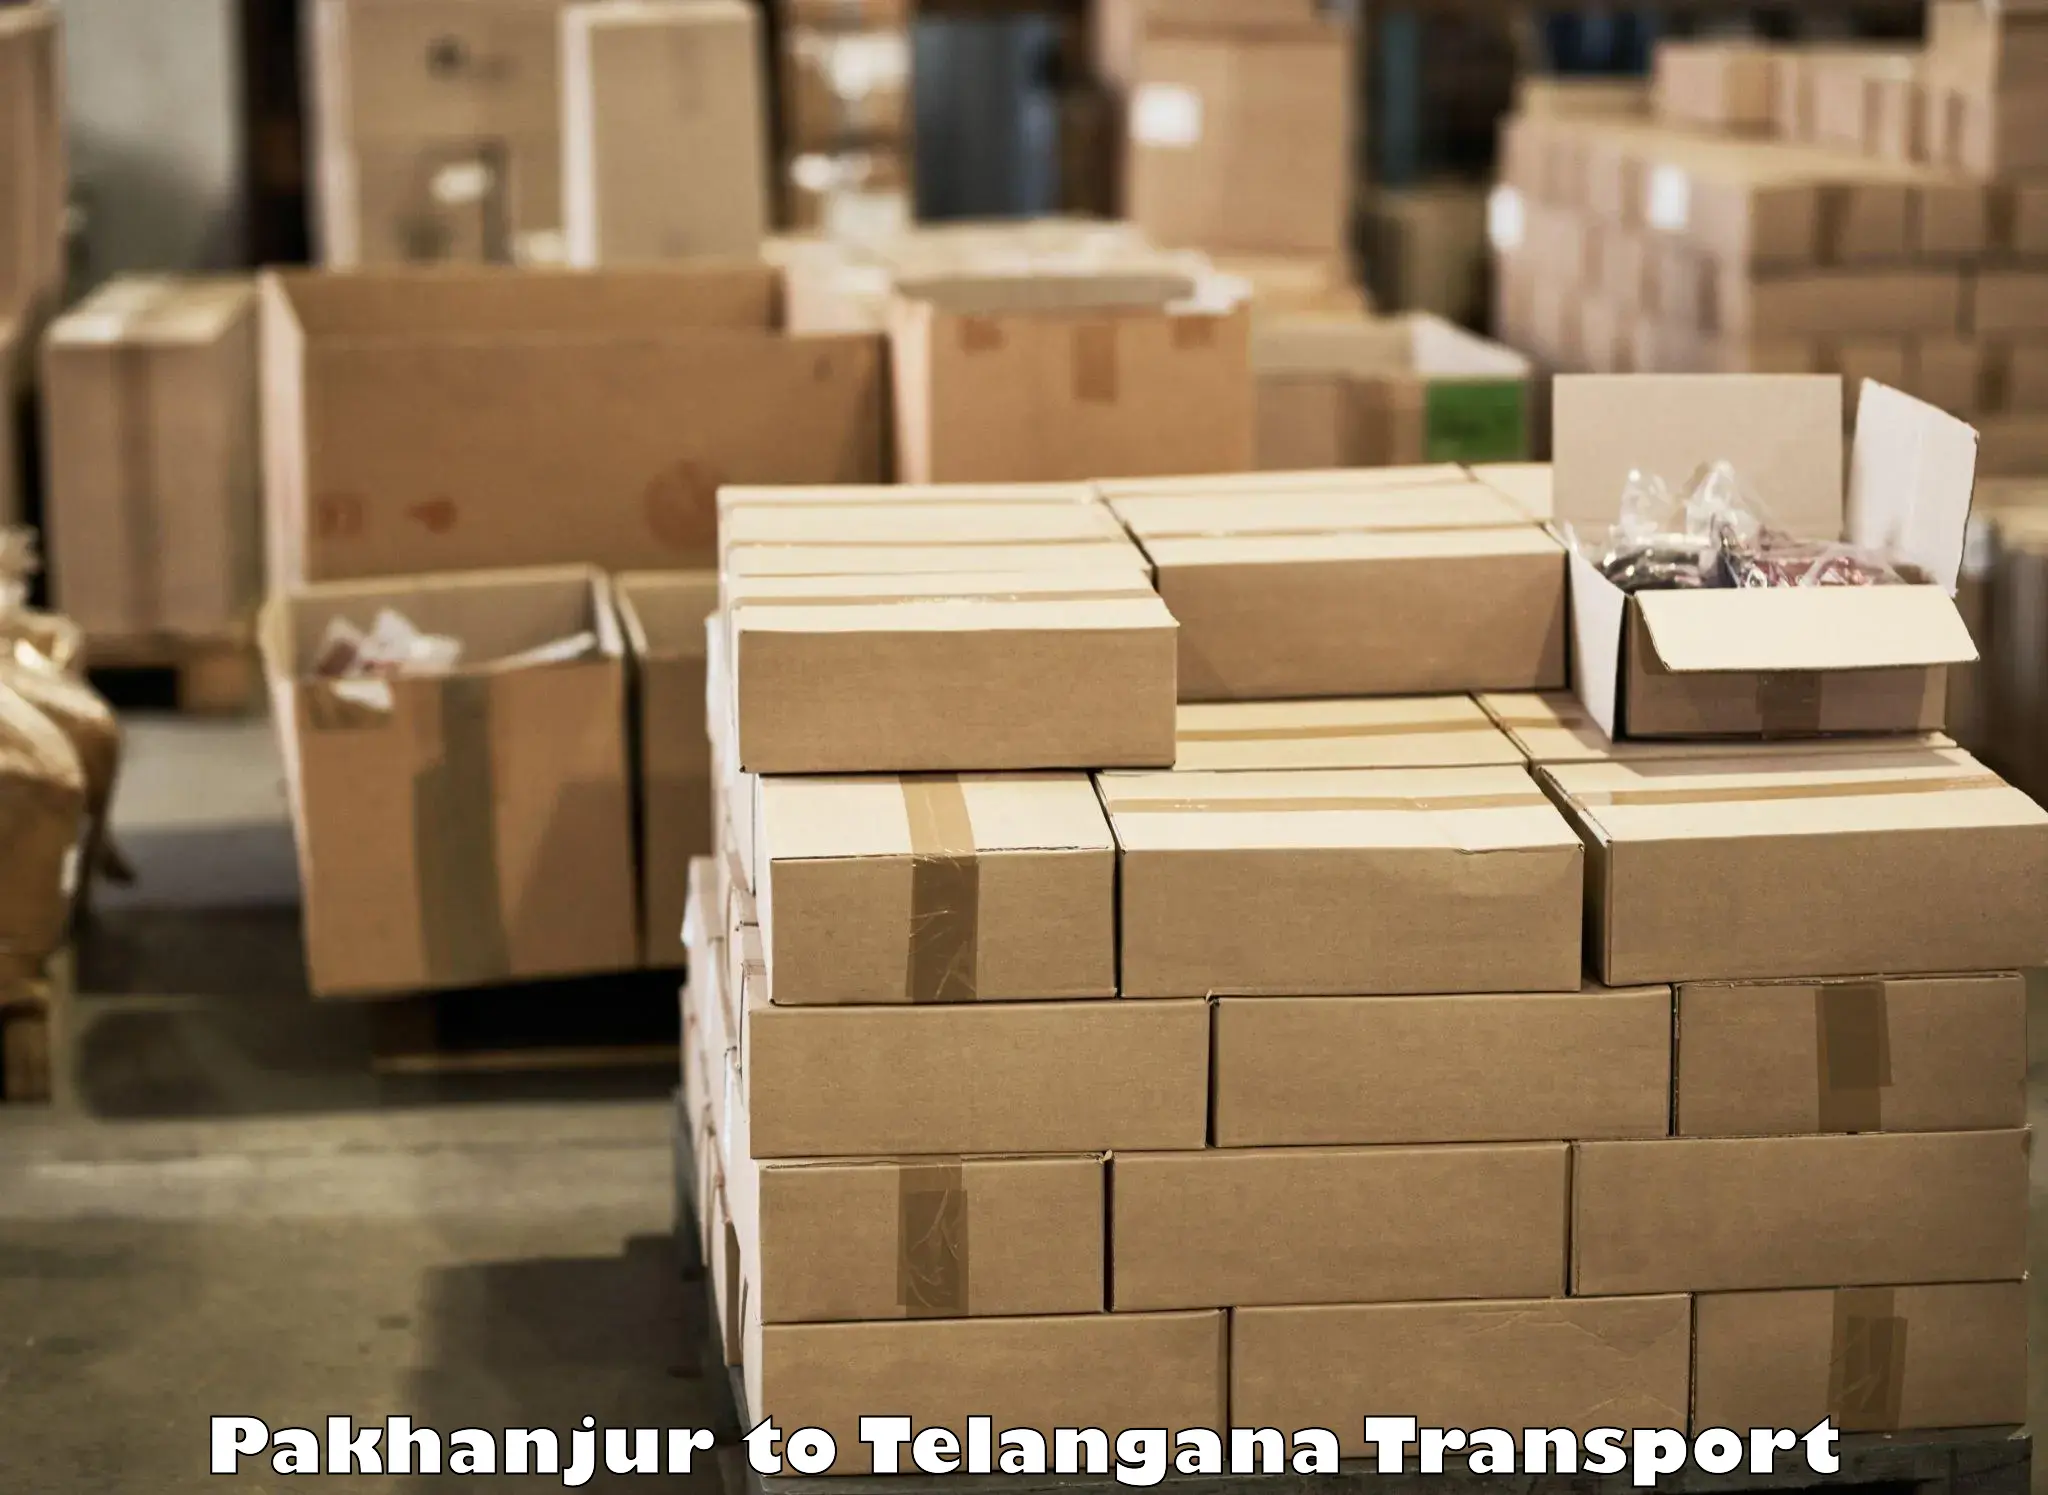 Road transport online services in Pakhanjur to Balanagar